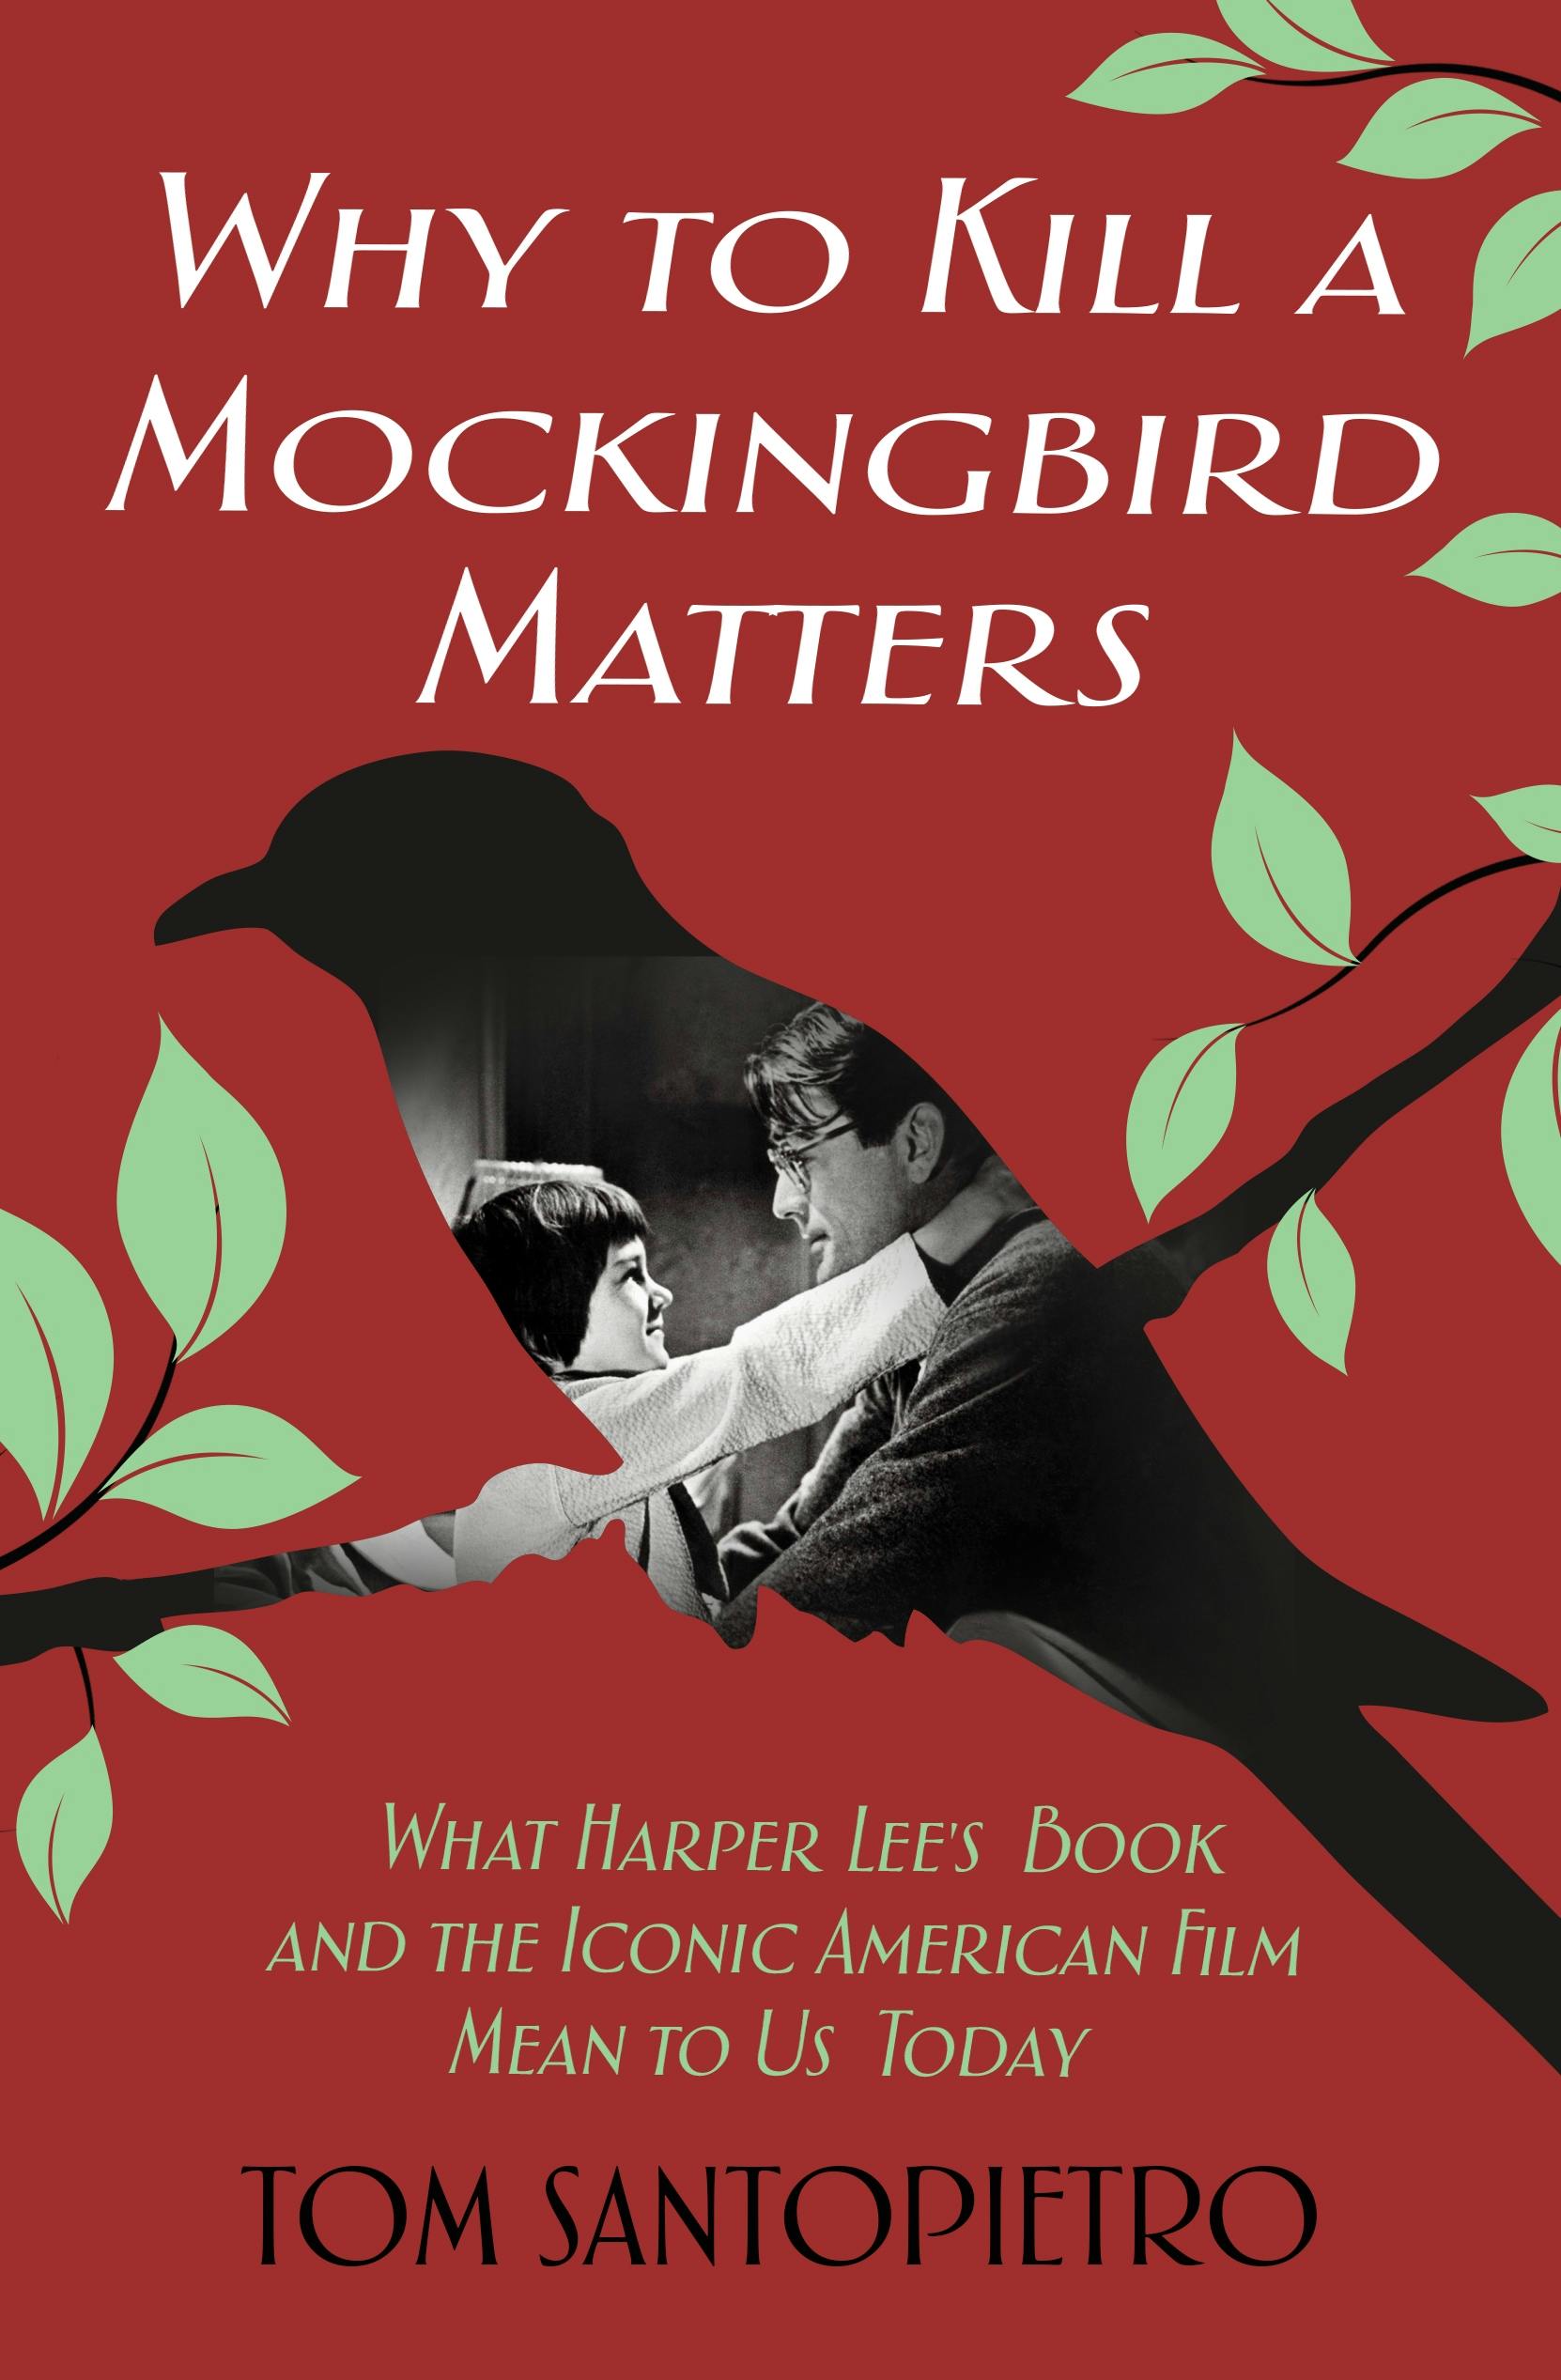 to kill a mockingbird movie vs book